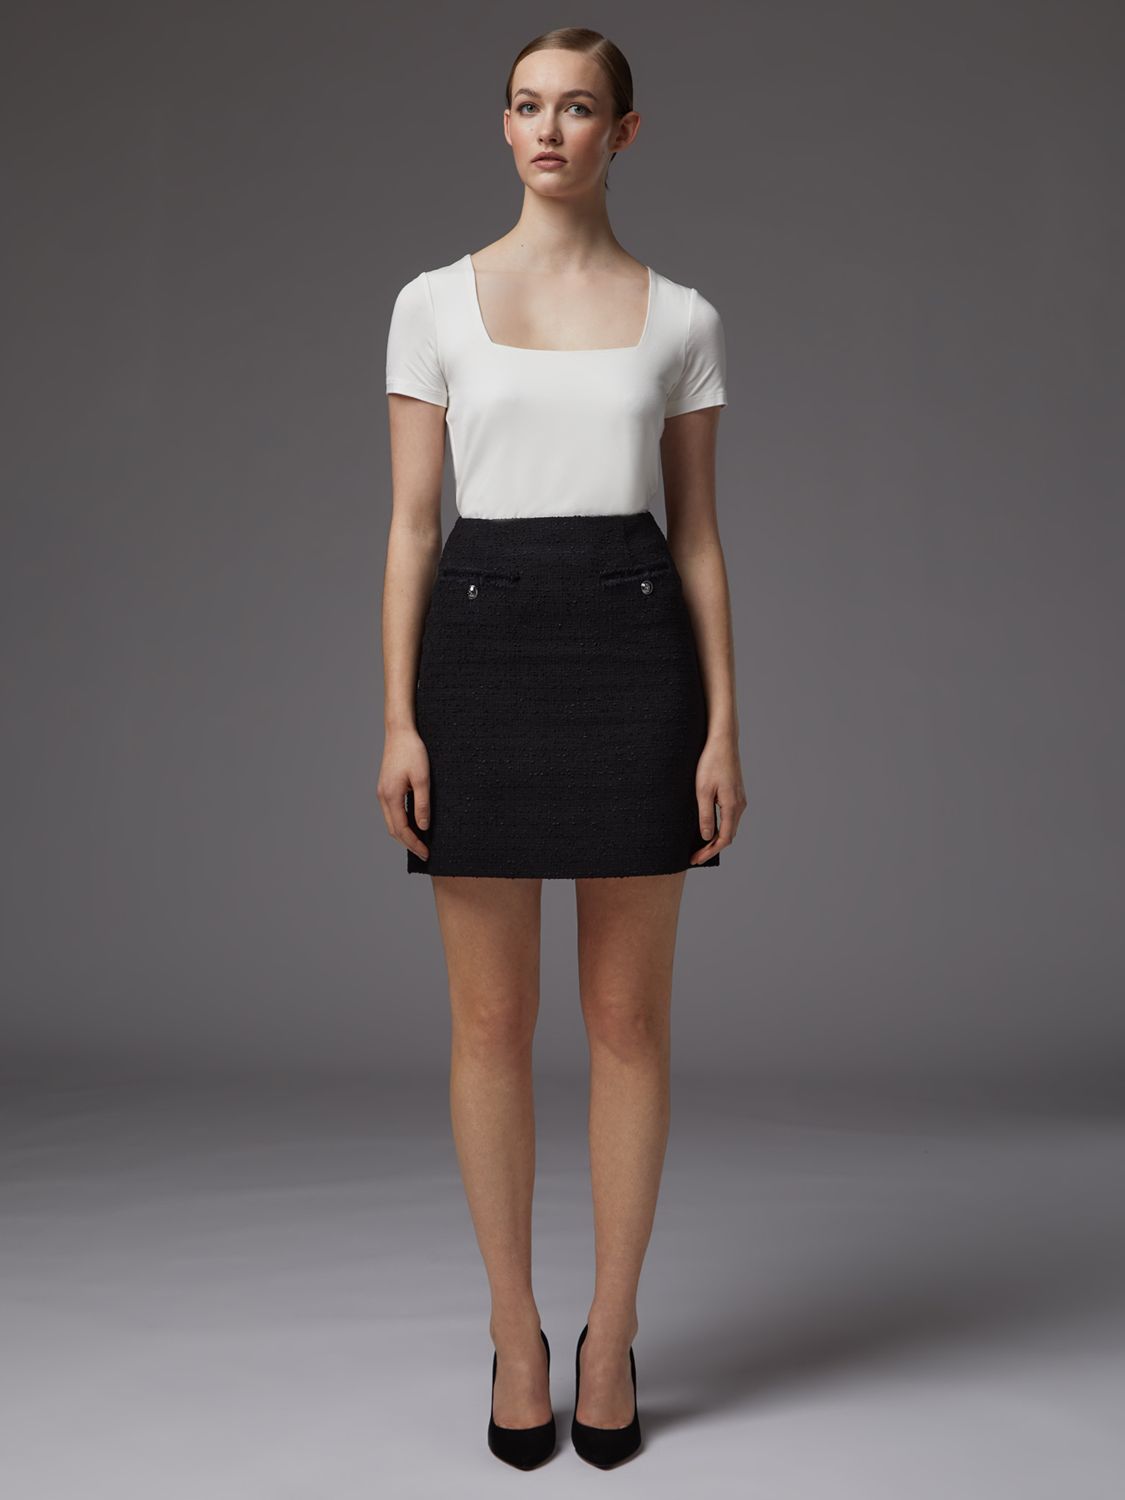 L.K.Bennett Charlee Tweed Skirt, Black at John Lewis & Partners